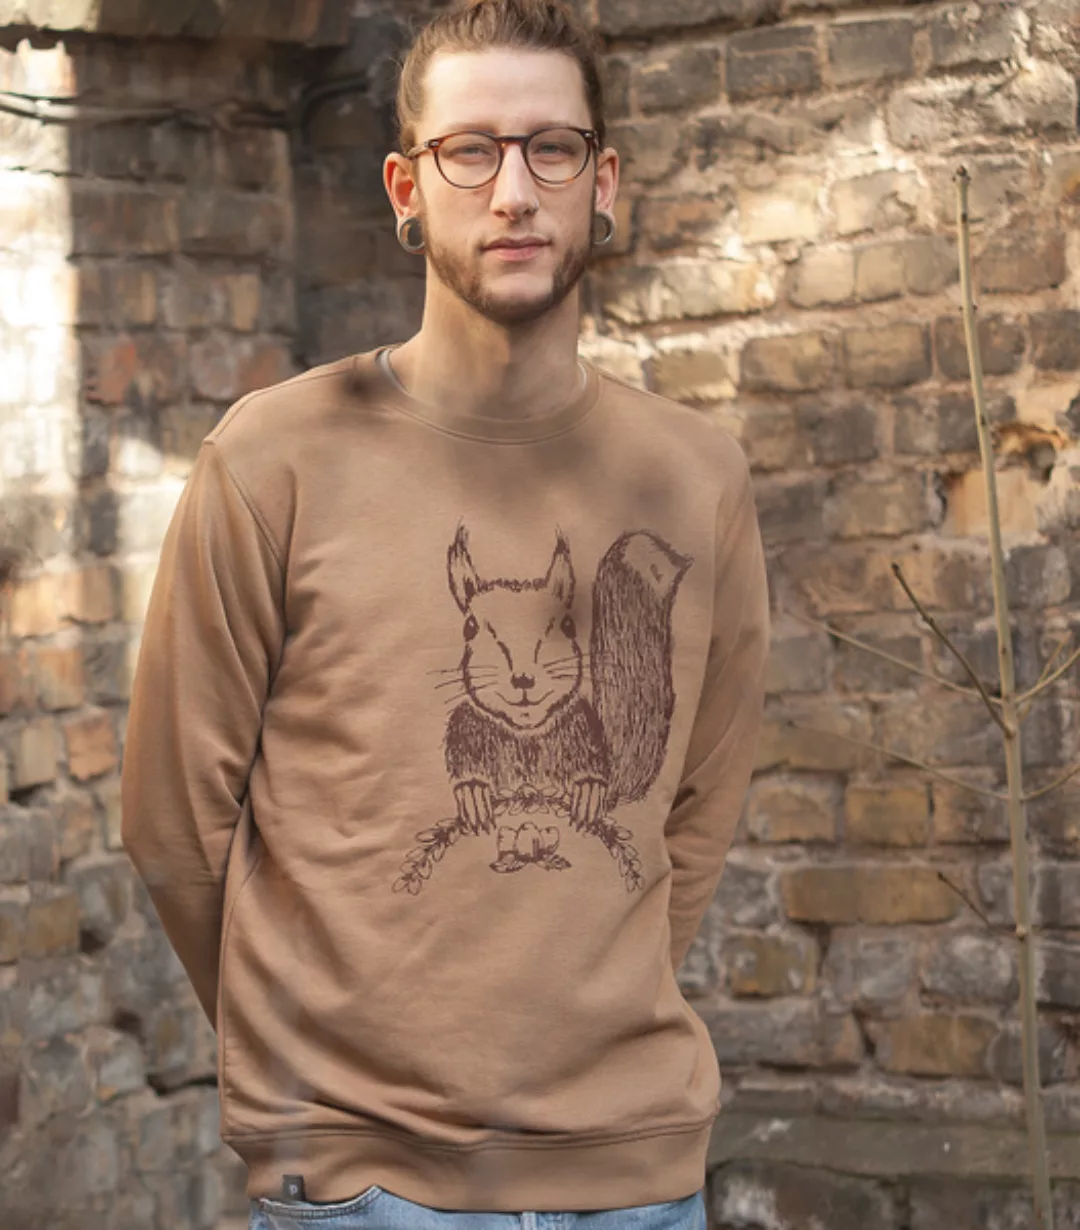 Päfjes - Ella Eichhorn / Squirrel - Unisex Sweater - Camelbrown günstig online kaufen